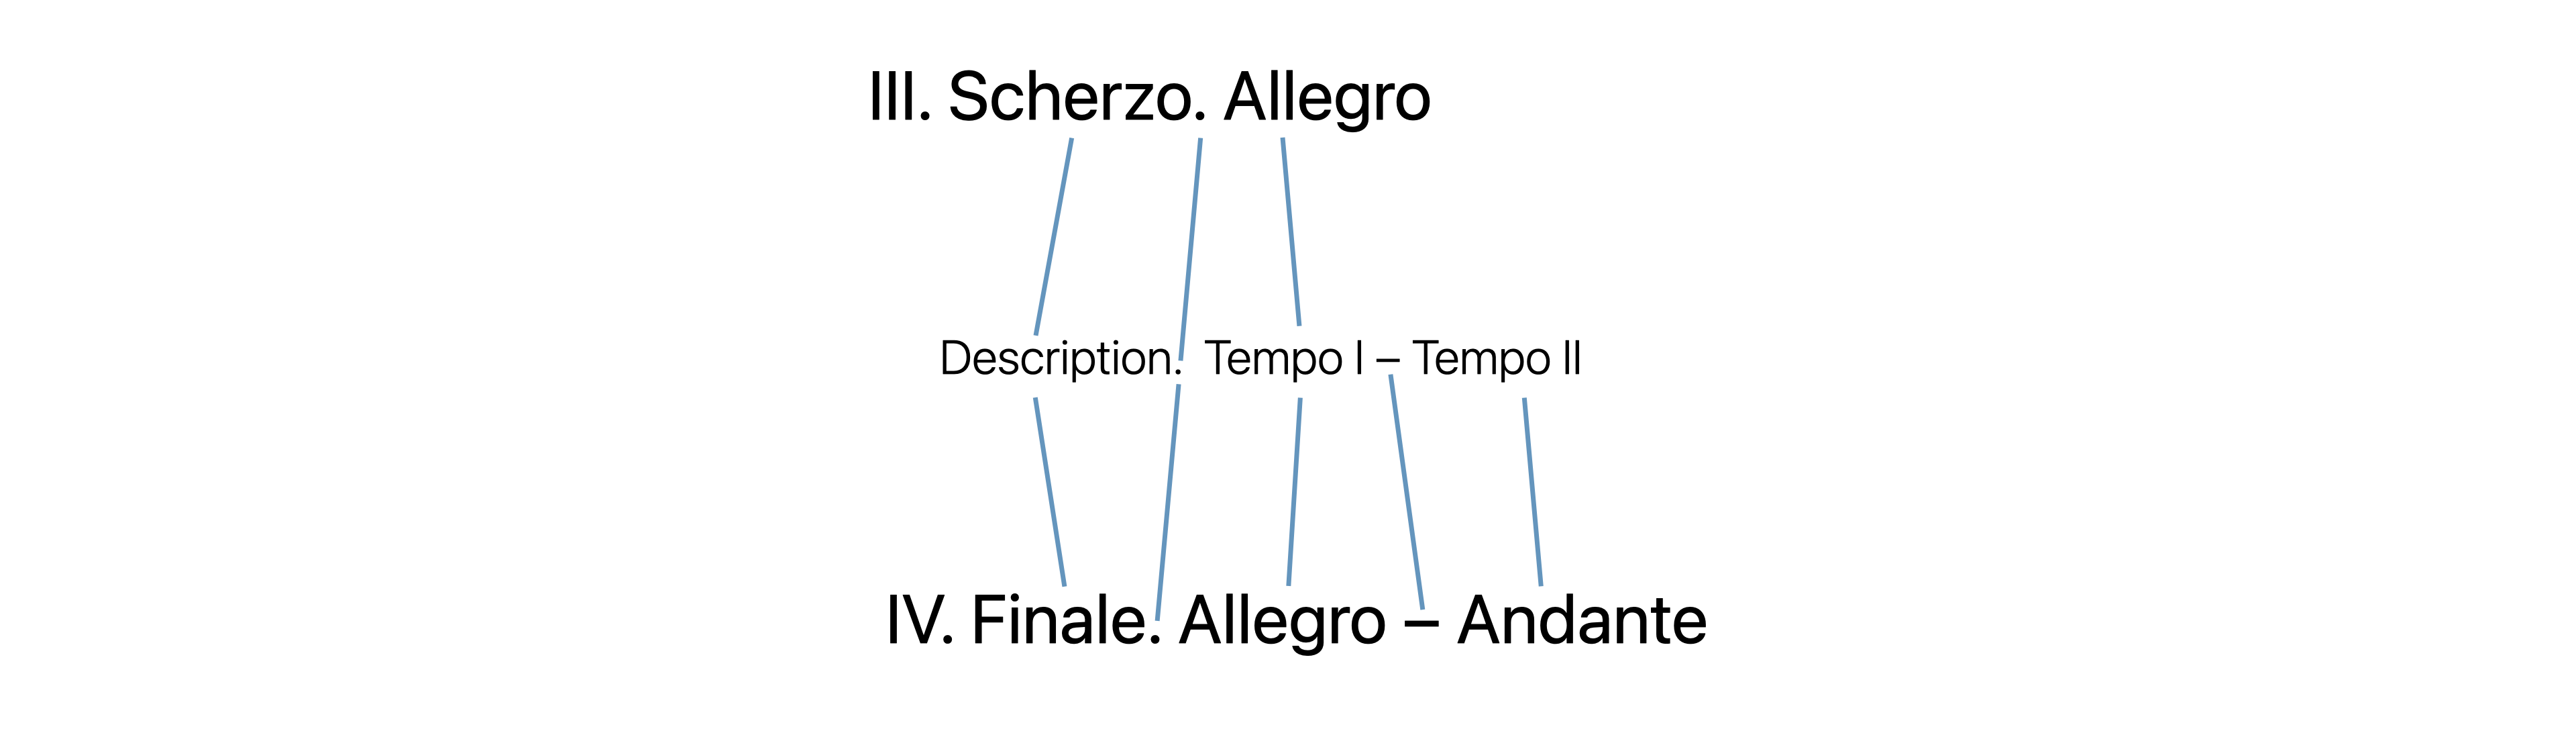 クラシック作品のタイトルにおいて、楽章のタイトルのみ記載する場合の表記例。